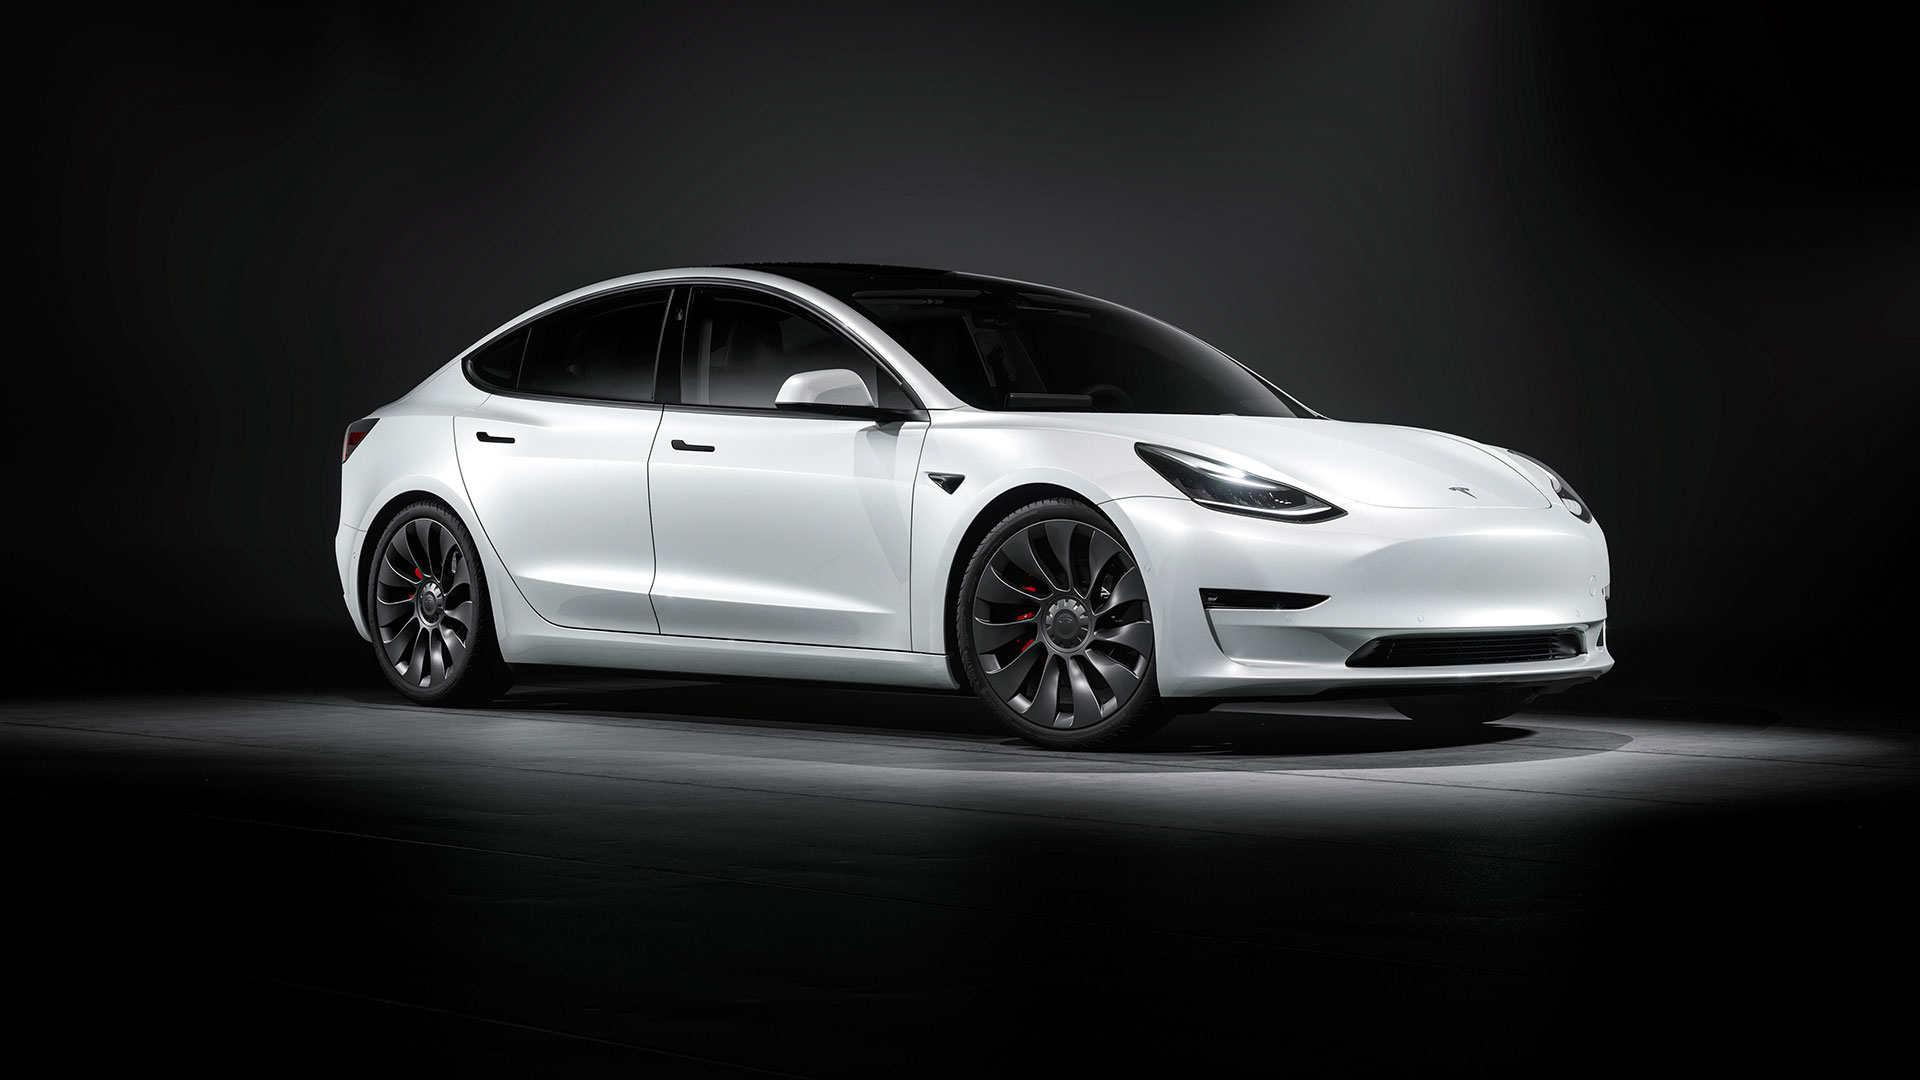 Premières images officielles de la Tesla Model 3 avec tablette tactile  géante - Challenges